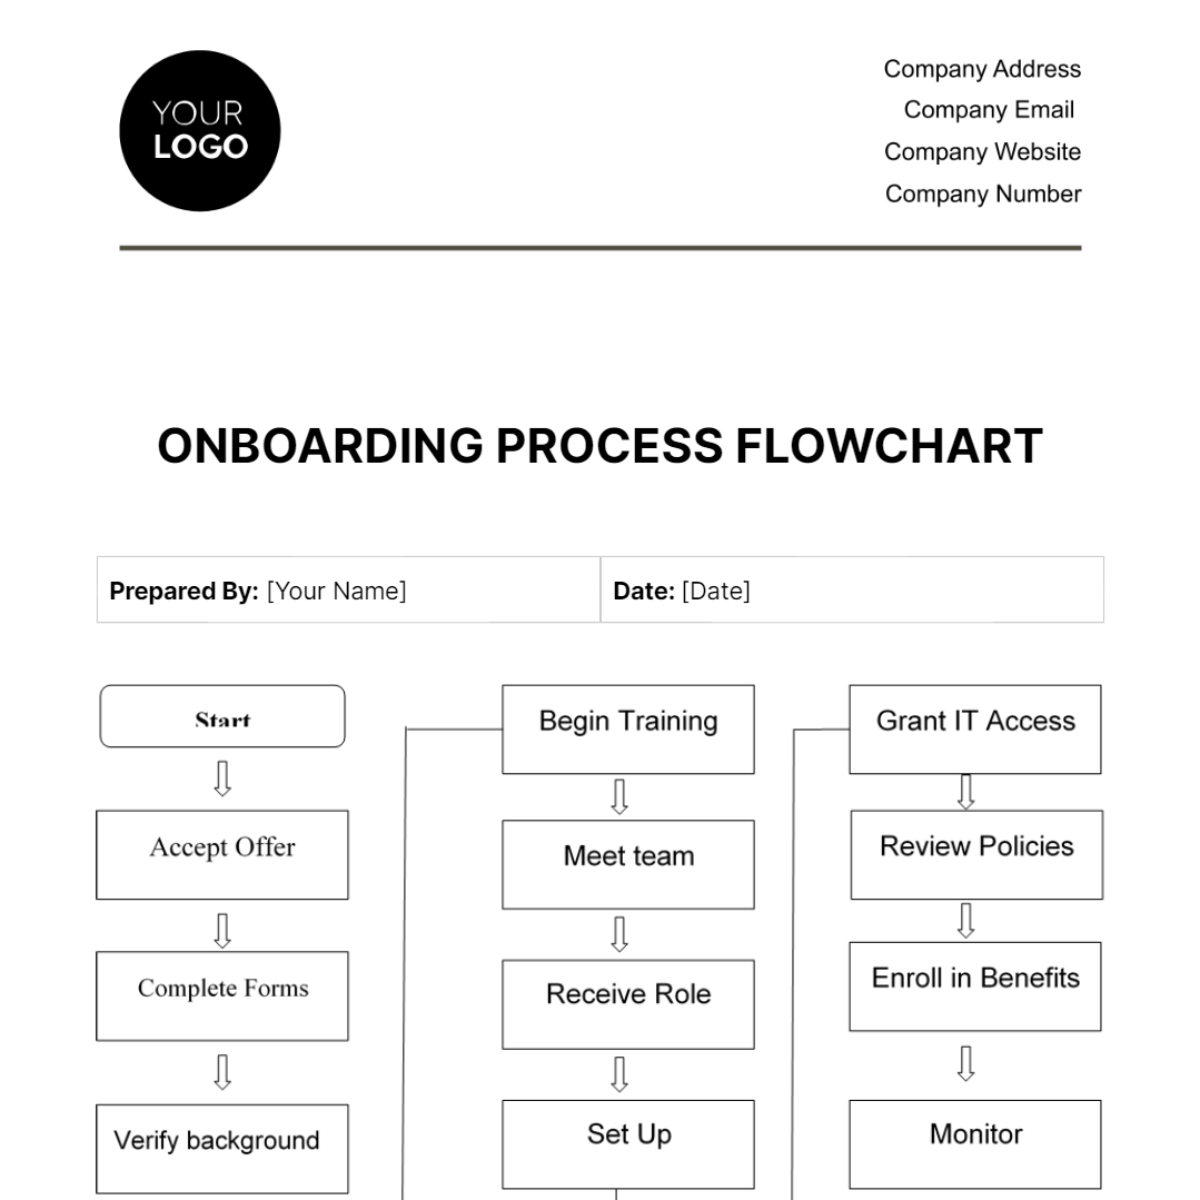 Onboarding Process Flowchart HR Template